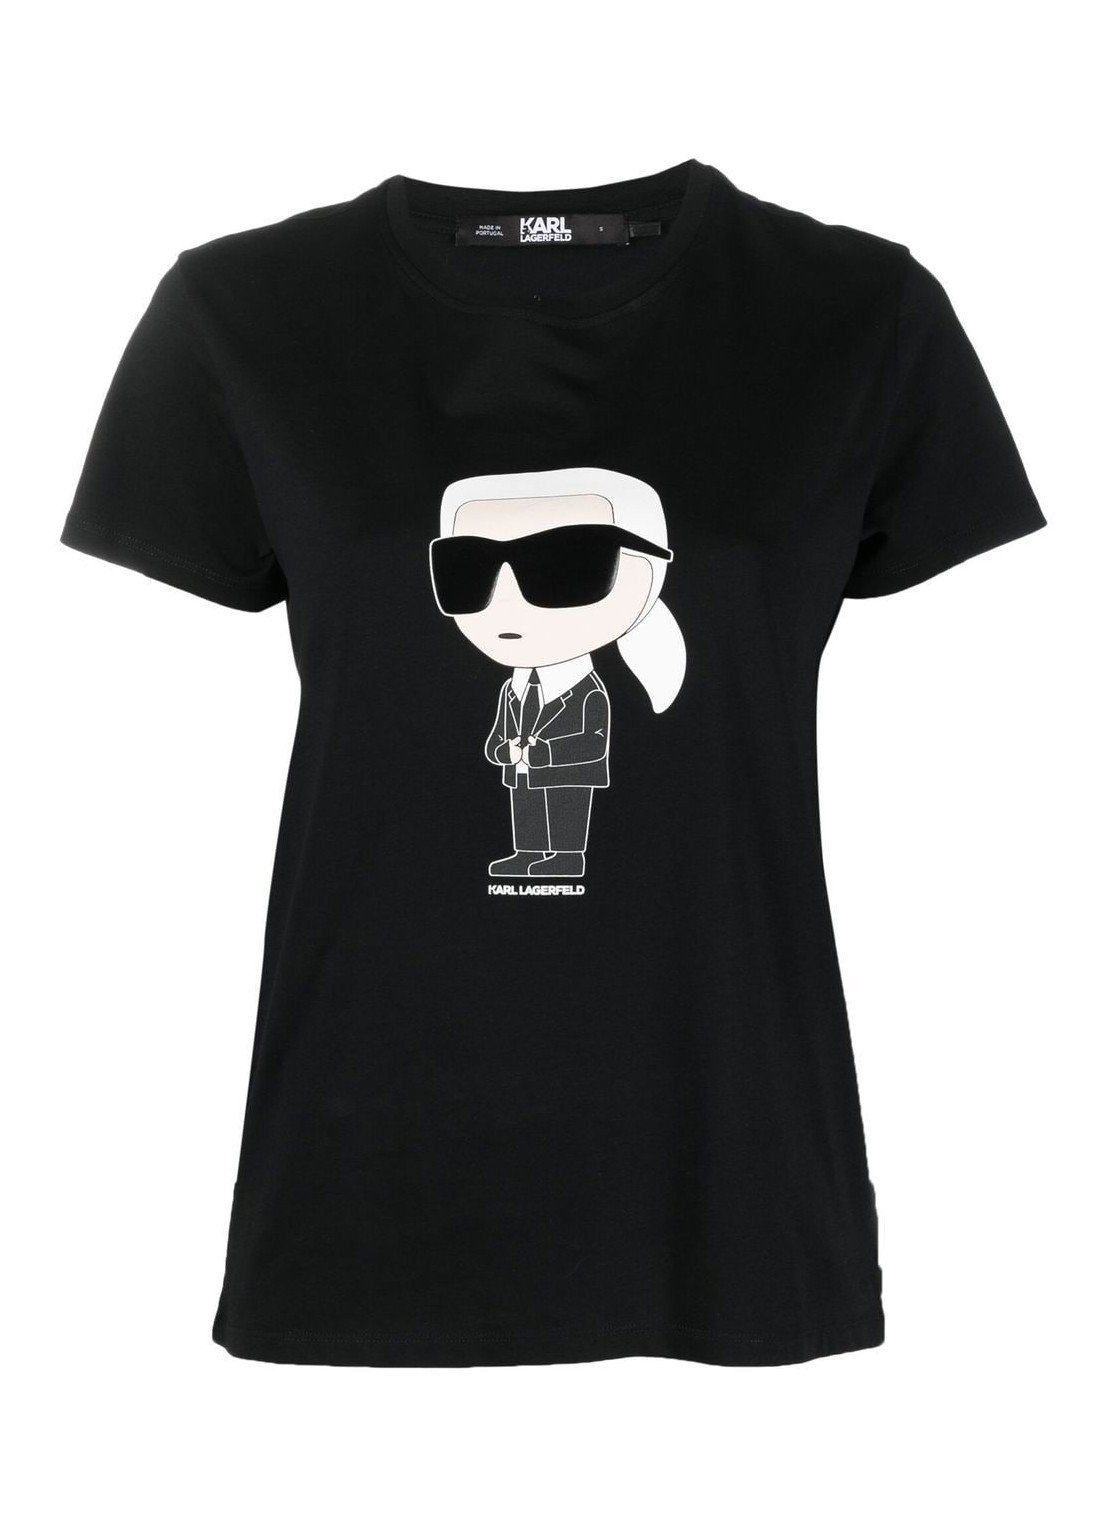 Top karl lagerfeld top woman ikonik 2.0 karl t-shirt 230w1700 999 talla negro
 